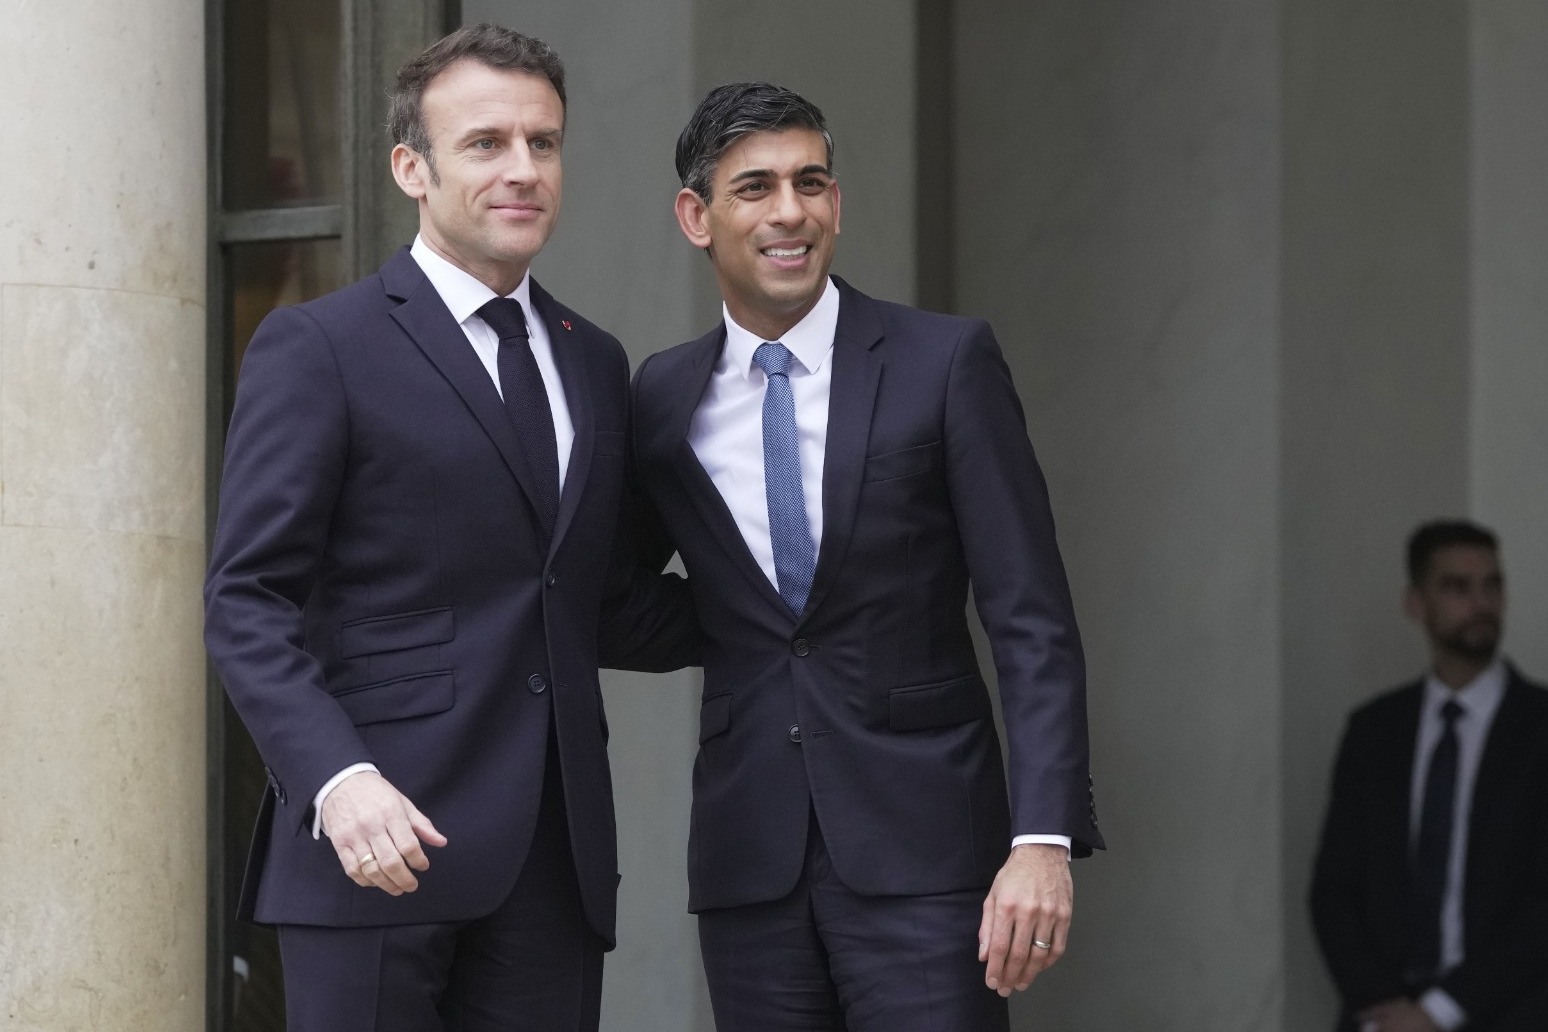 Rishi Sunak and Emmanuel Macron discuss migrant crossings in Paris meeting 